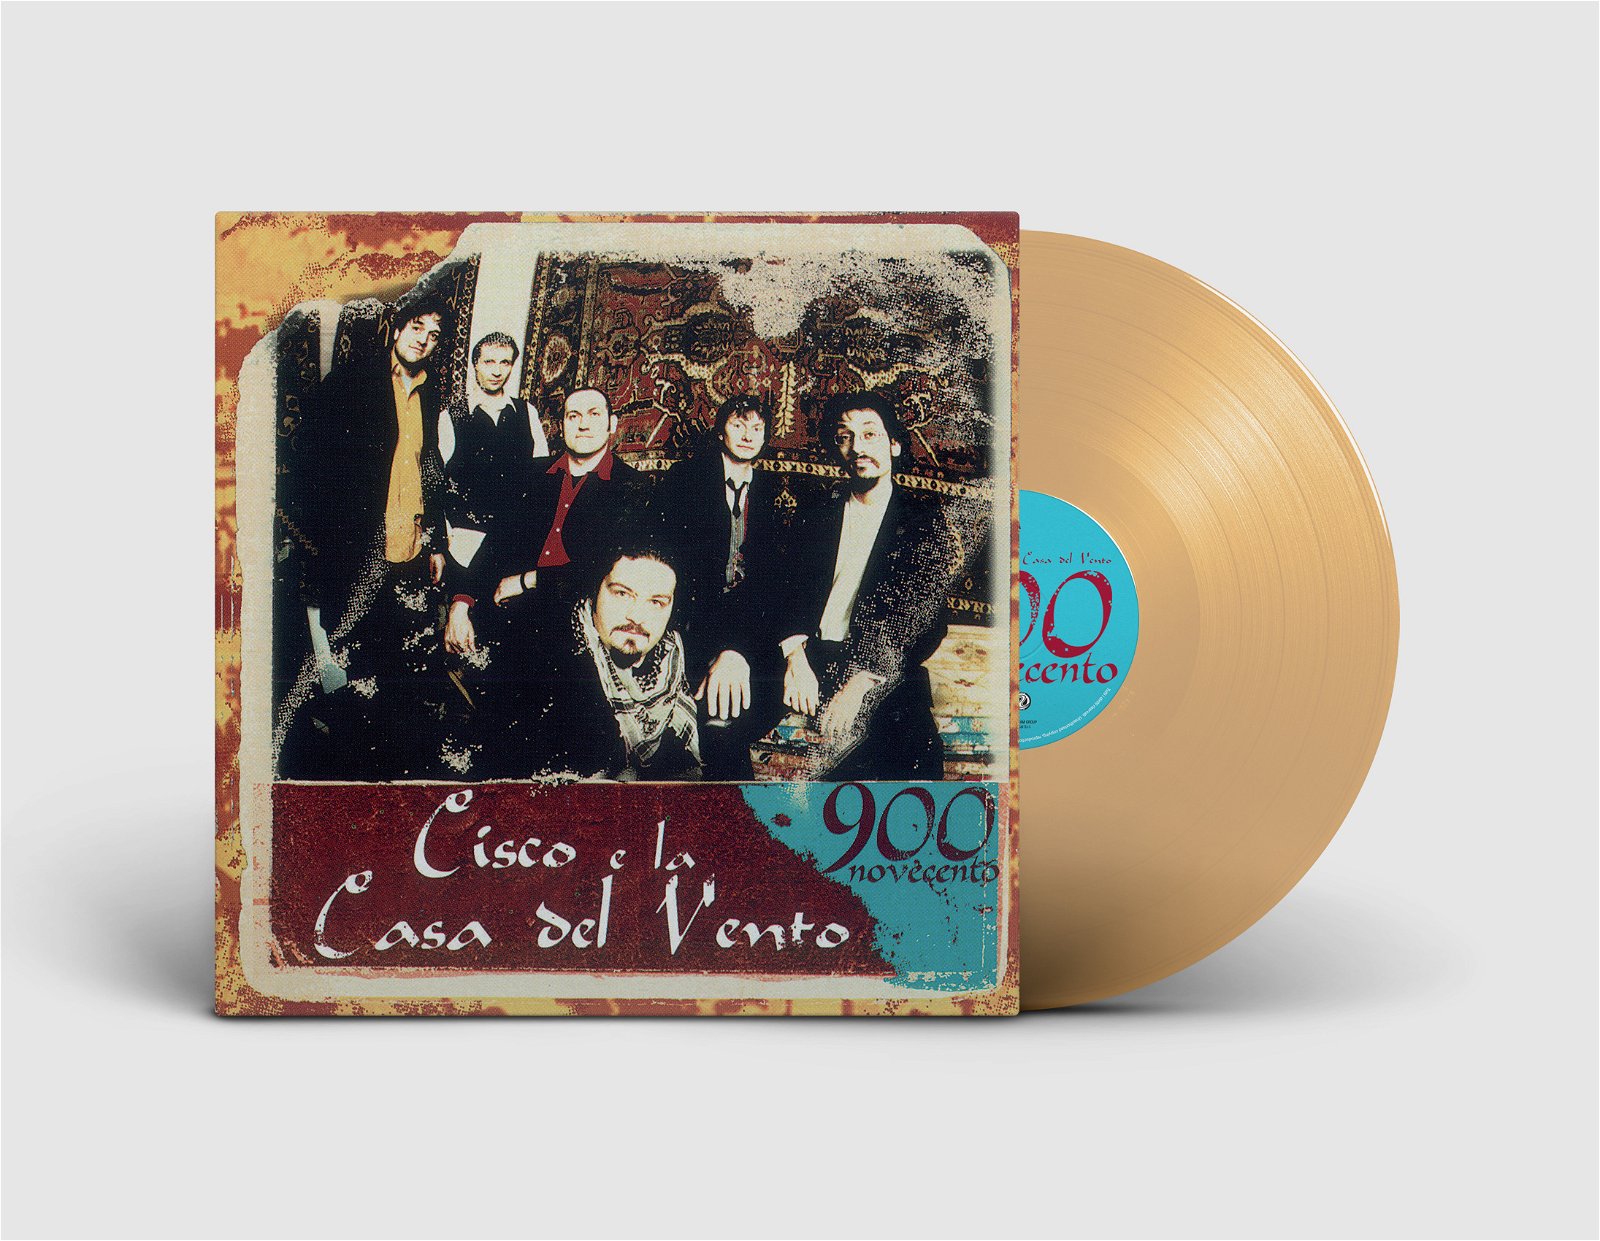 CD Shop - CISCO E LA CASA DEL VENTO 900